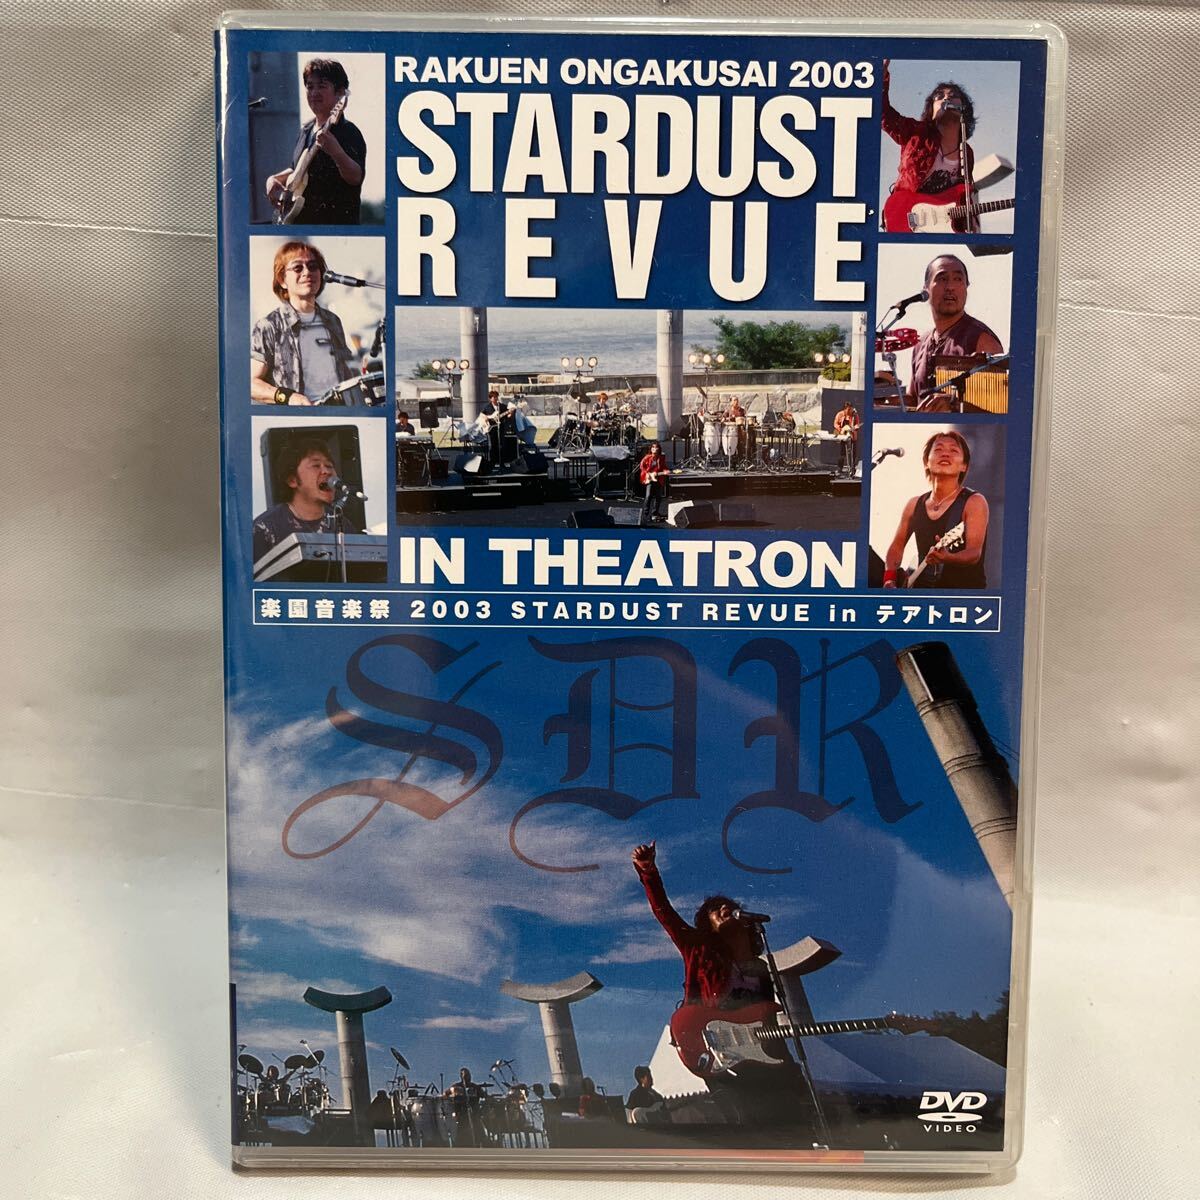 楽園音楽祭 2003 STARDUST REVUE in テアトロン DVD 未開封_画像1